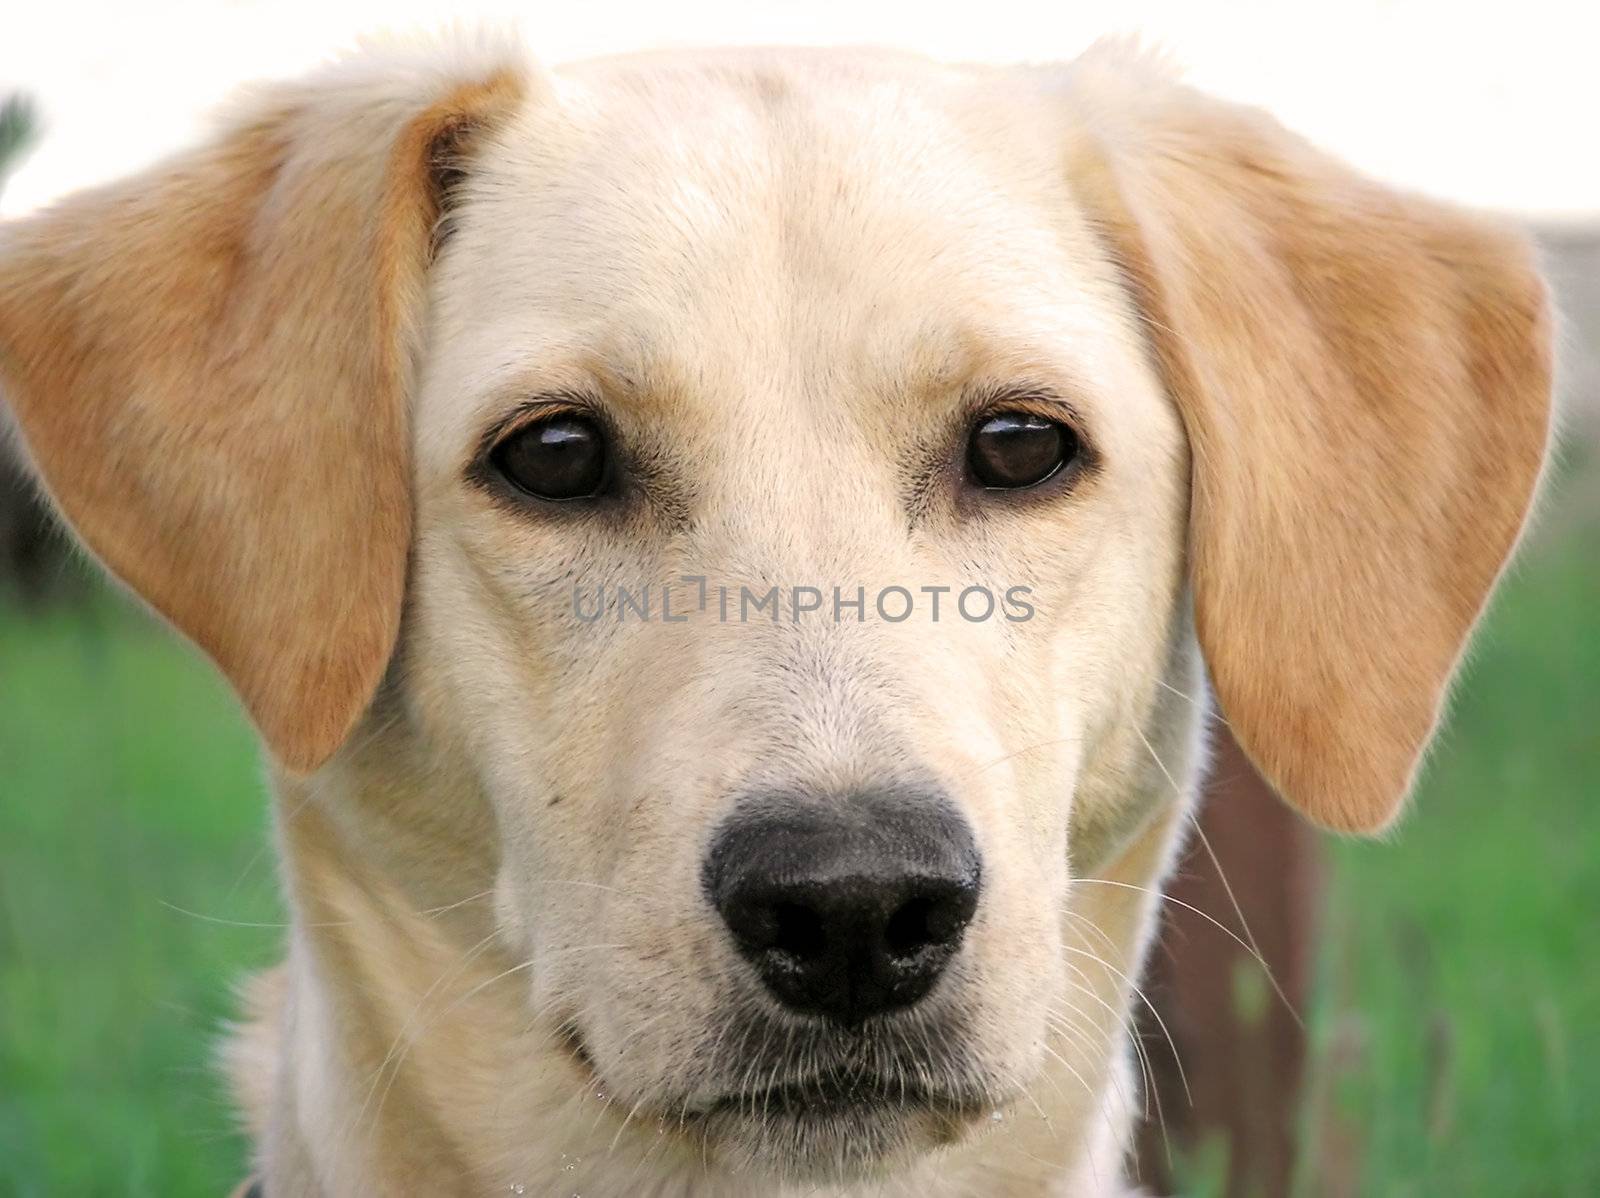 Beautiful blond labrador retriever close-up, dog has an expressive slim face.